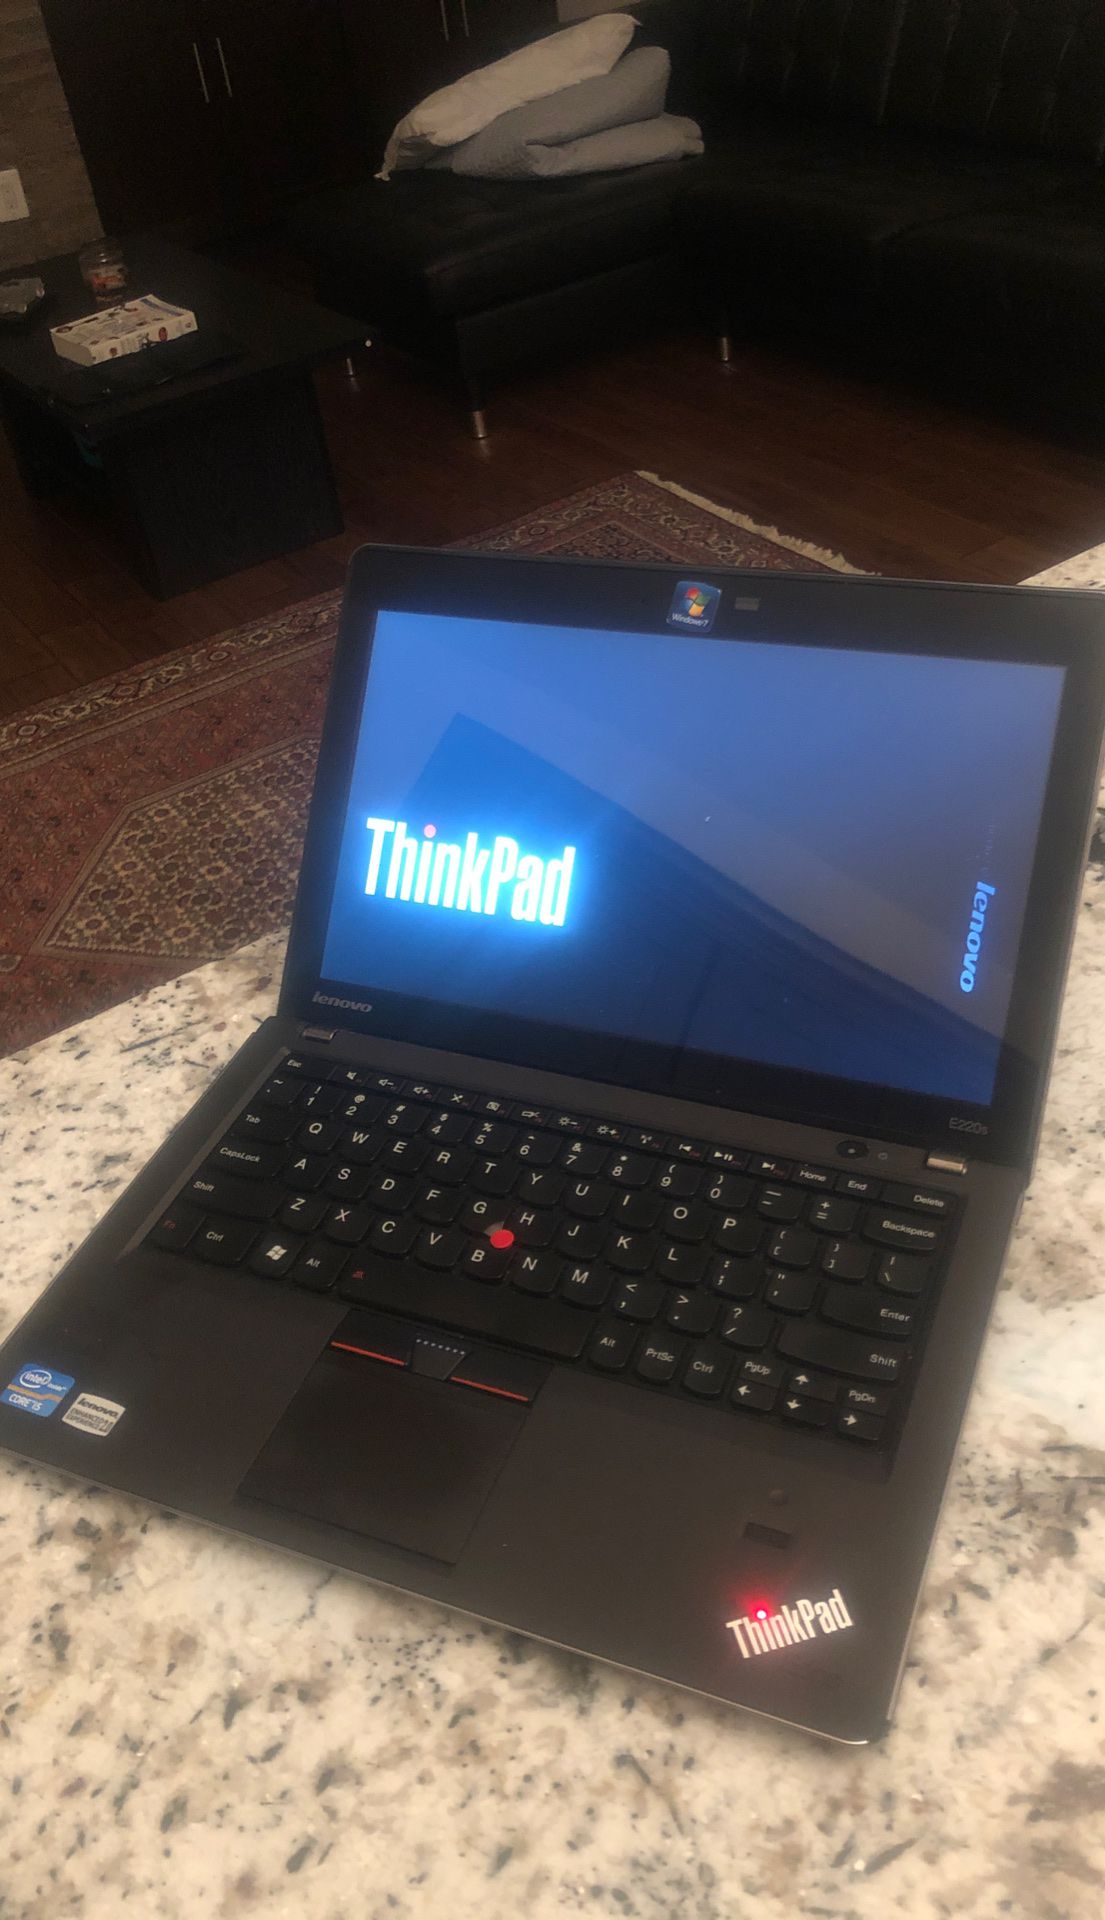 Lenovo Thinkpad i5 Windows 10 with Office